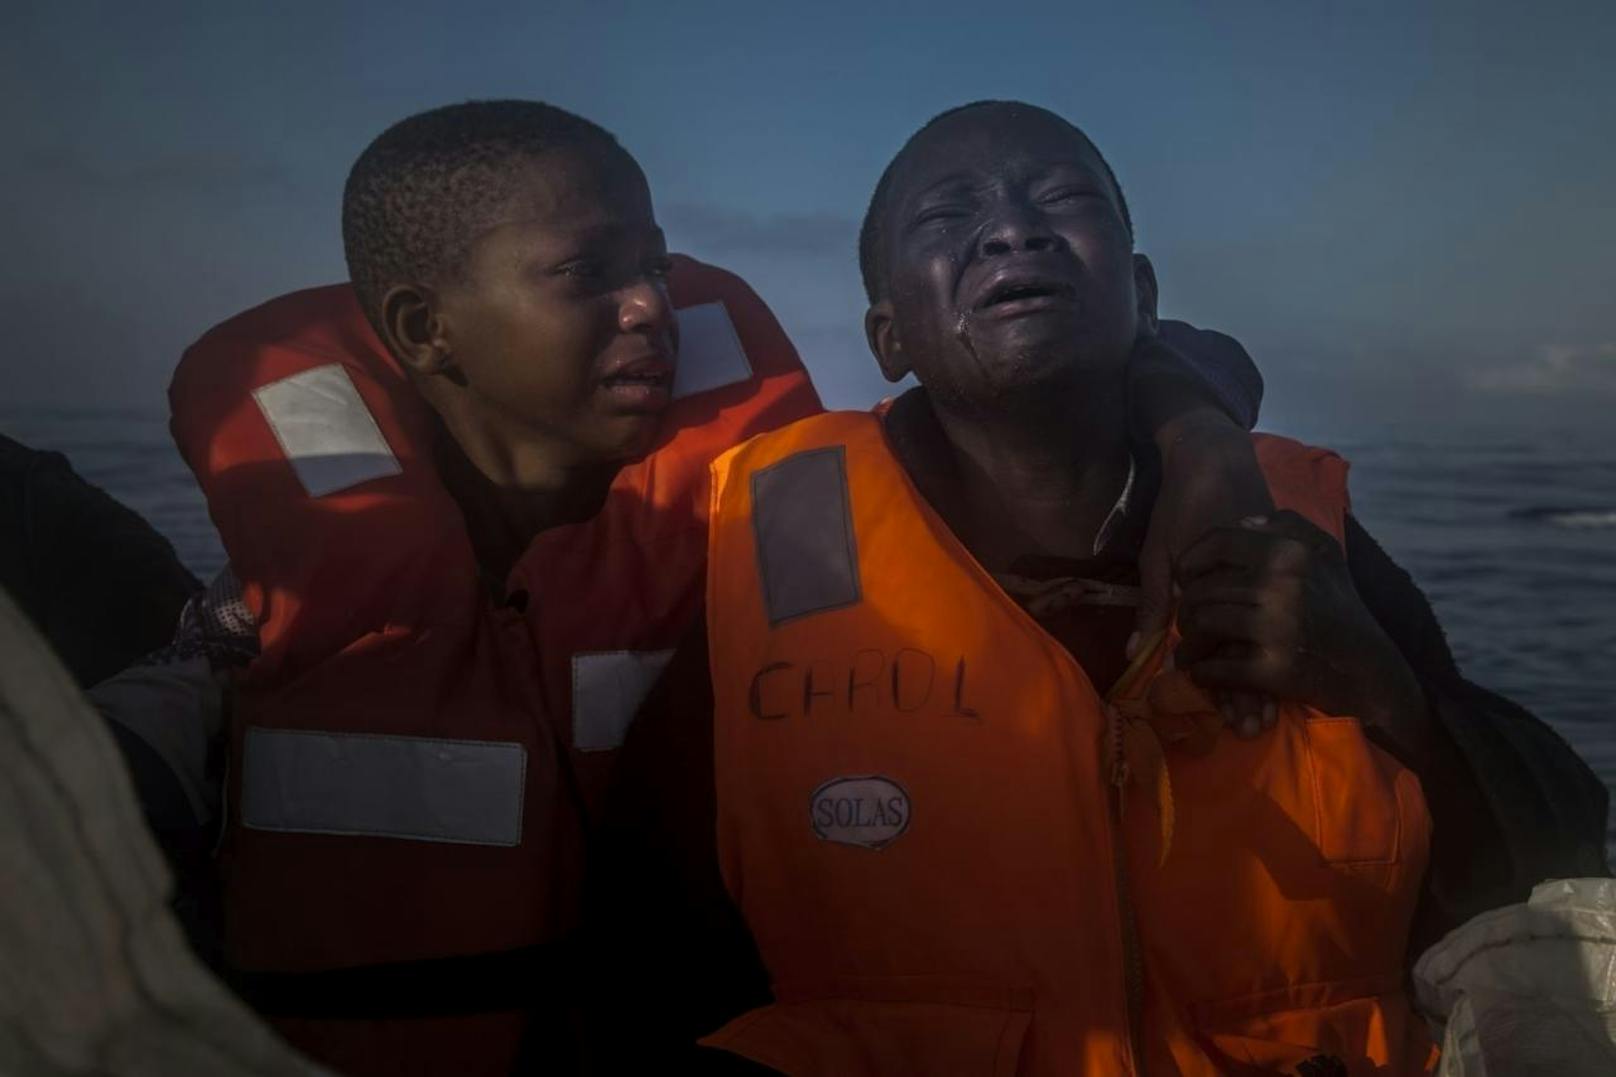 <b>Reportagen ? Zweiter Preis, Einzelbilder</b>
Santi Palacios, The Associated Press
Titel: Verlassen
Ein elfjähriges Mädchen (links) und ihr zehnjähriger Bruder, deren Mutter in Libyen gestorben ist, auf einem NGO-Rettungsboot im Mittelmeer, 28. Juli 2016, etwa 23 Kilometer nördlich von Sabratha, Libyen. Mit anderen geretteten Flüchtlingen hatten die Kinder mehrere Stunden in einem überfüllten Schlauchboot auf offener See verbracht.
